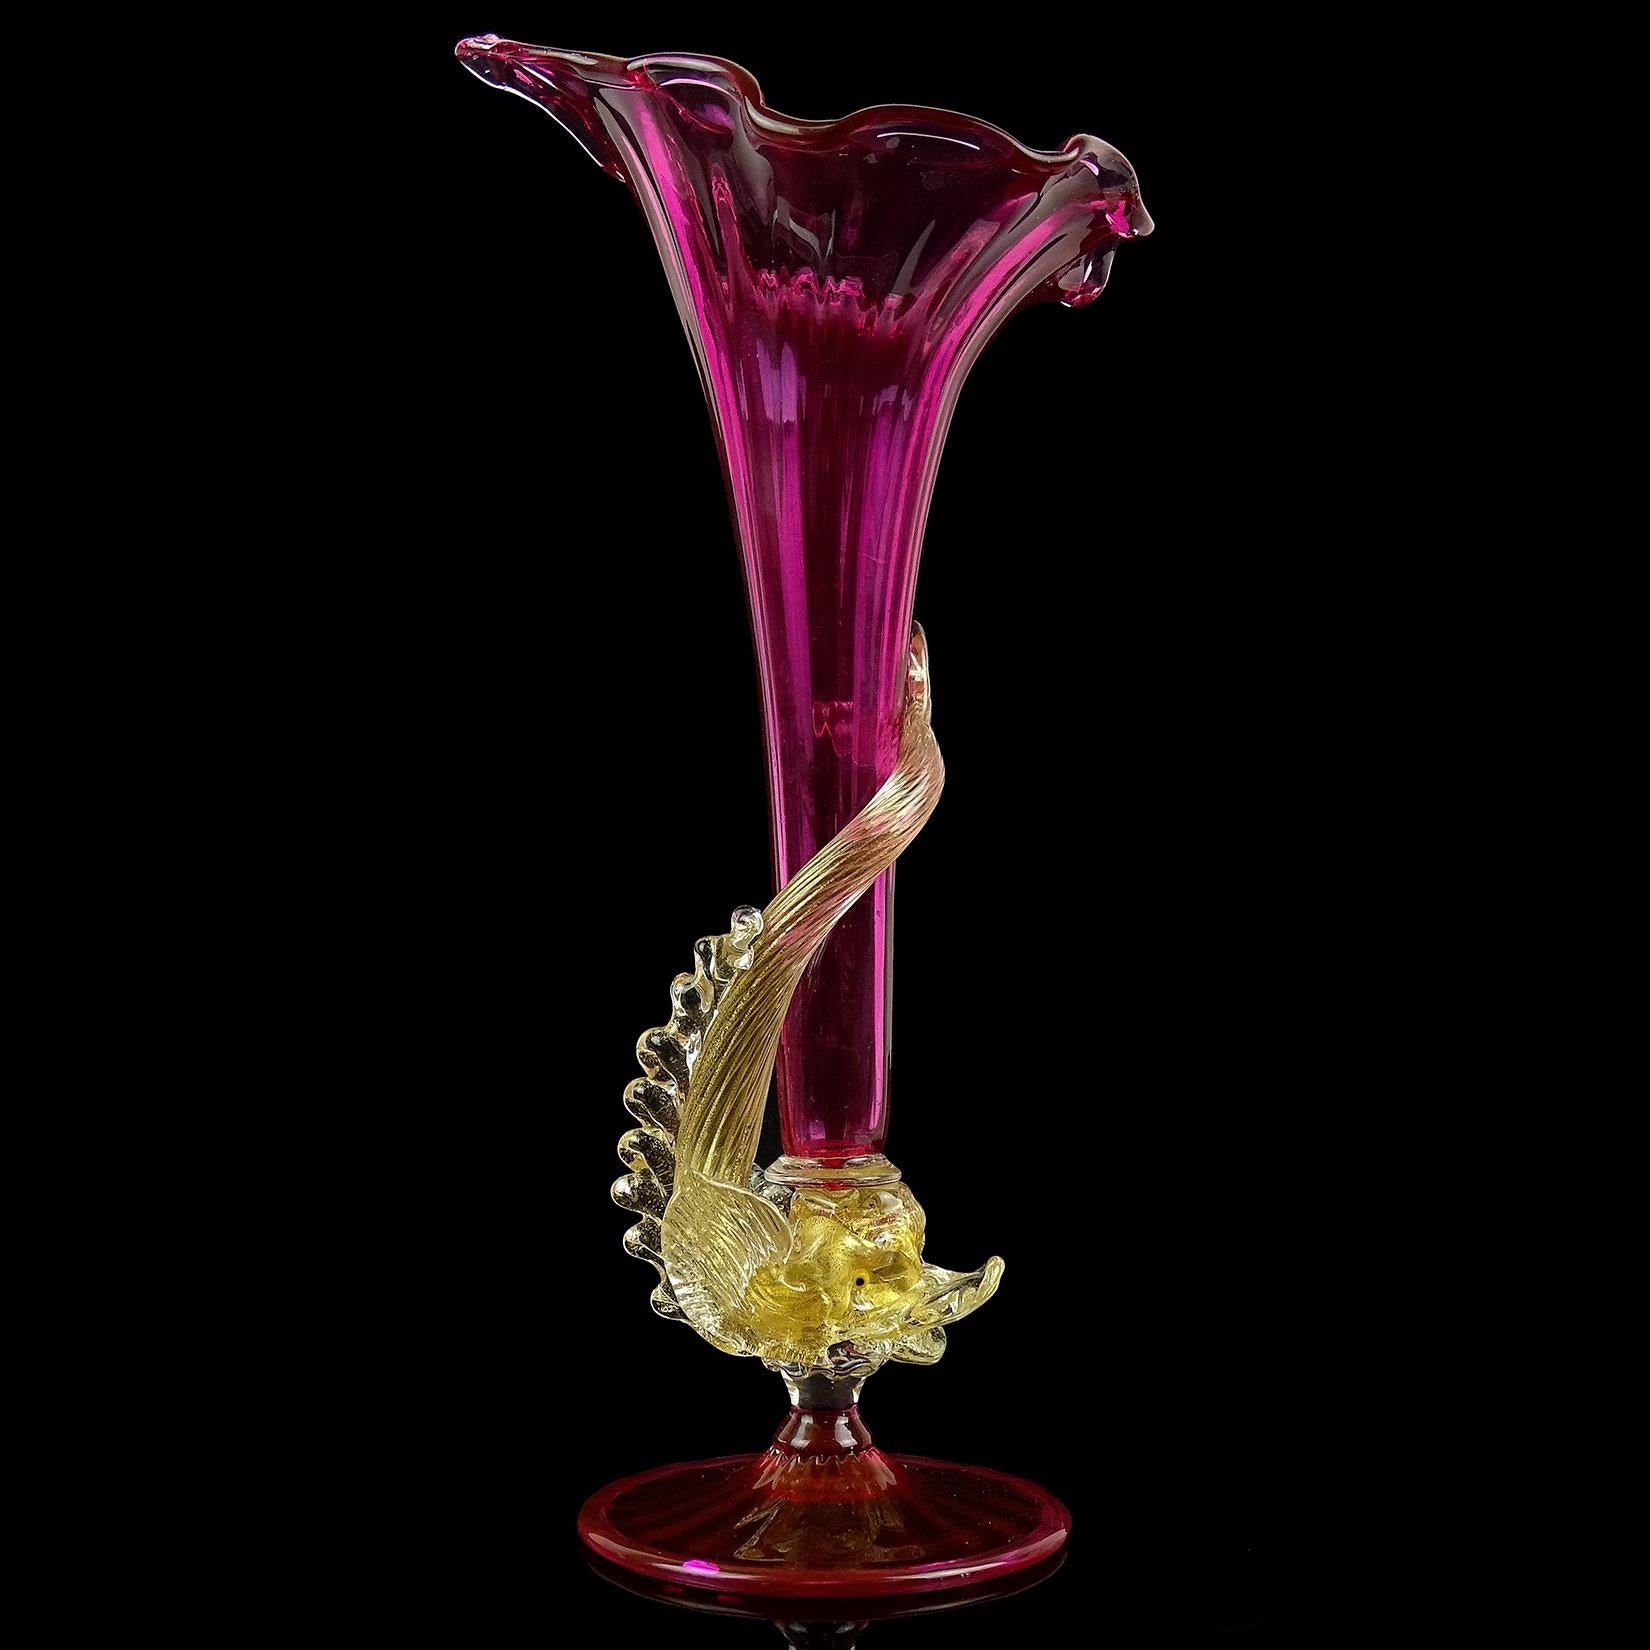 Schöne, frühe antike venezianische mundgeblasene Amethyst rosa und Goldflecken italienische Kunstglas Fischstamm Blumenvase. Nach dem Vorbild der Firmen Salviati und Fratelli Toso geschaffen. Der Fisch ist sehr detailliert und üppig mit Blattgold